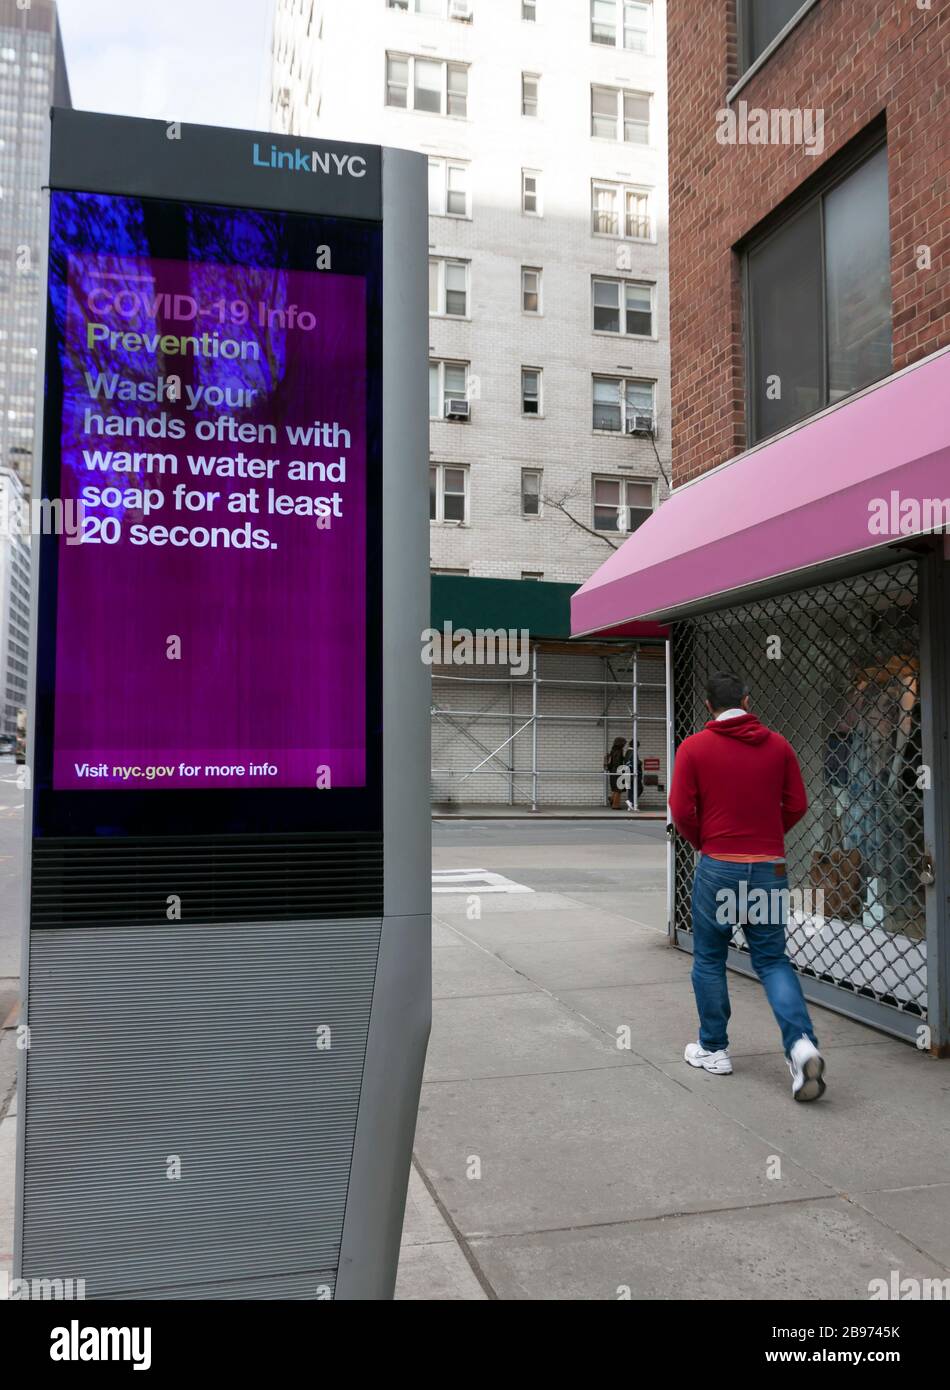 LinkNYC Schild am digitalen Kiosk auf dem Bürgersteig mit Tipps zur Prävention von Covid-19 (Coronavirus) und Tipps zum Händewaschen an New Yorker. Stockfoto